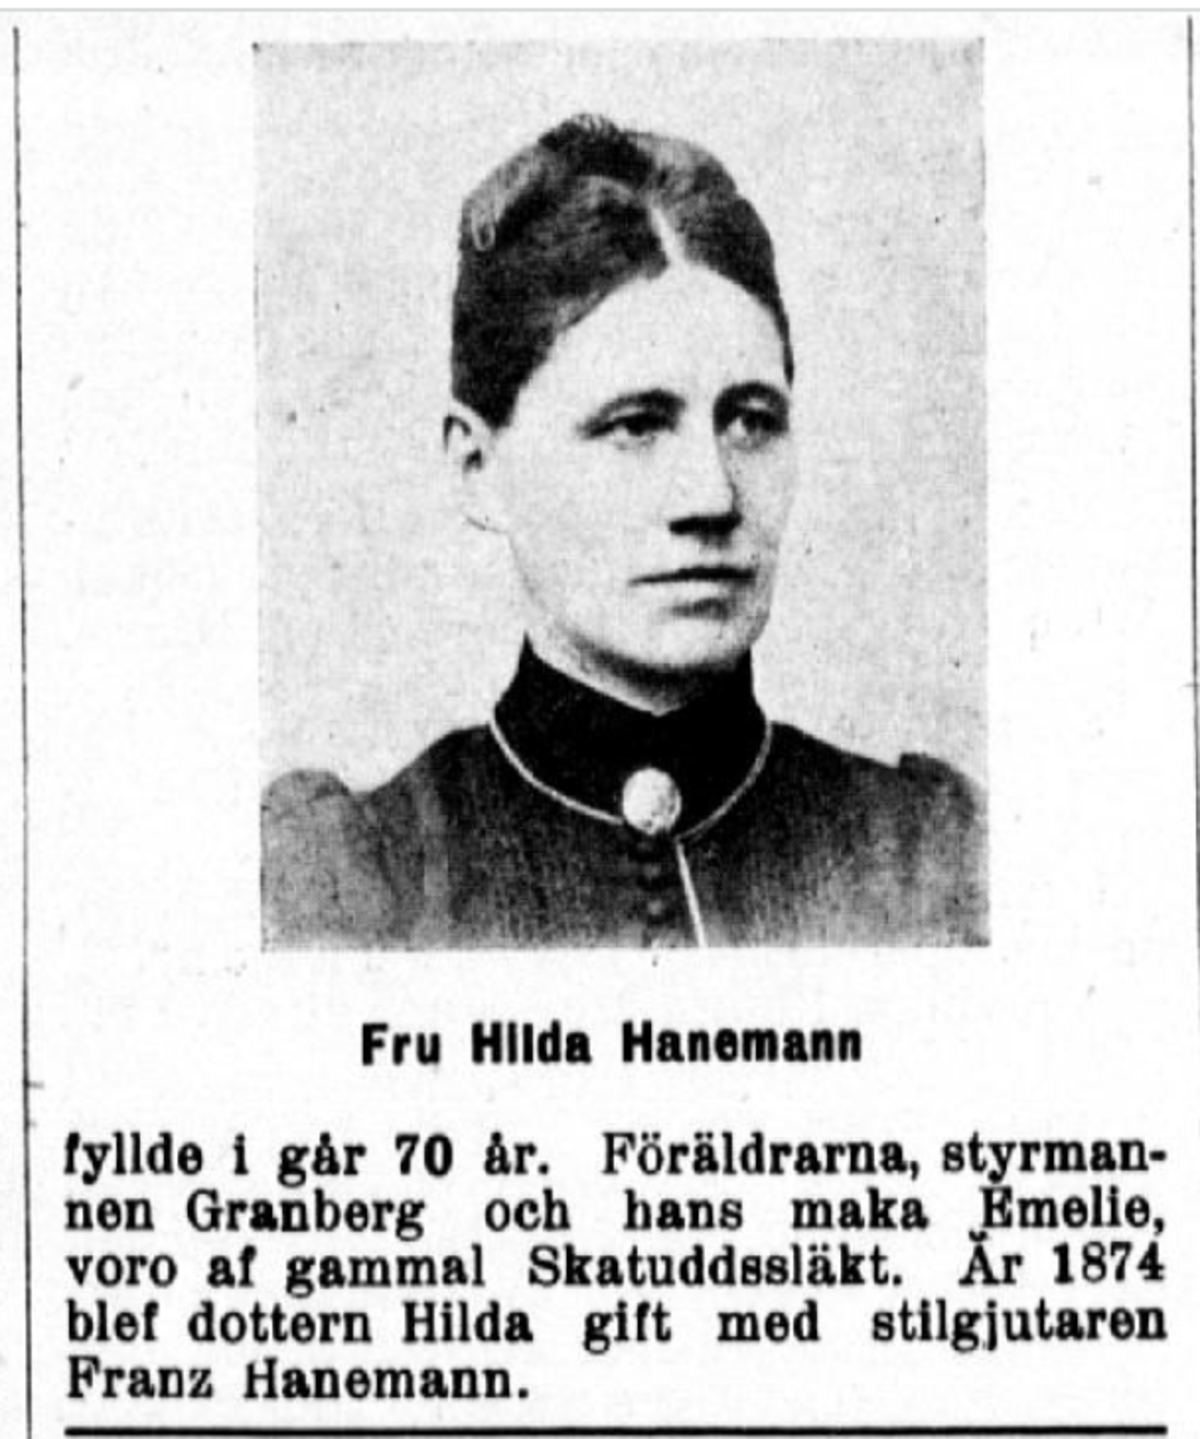 Valokuvallinen ruotsinkielinen ilmoitus lehdessä: Rouva Hilda Hanemann on täyttänyt 70. Hänen isäkseen mainitaan perämies Granberg.